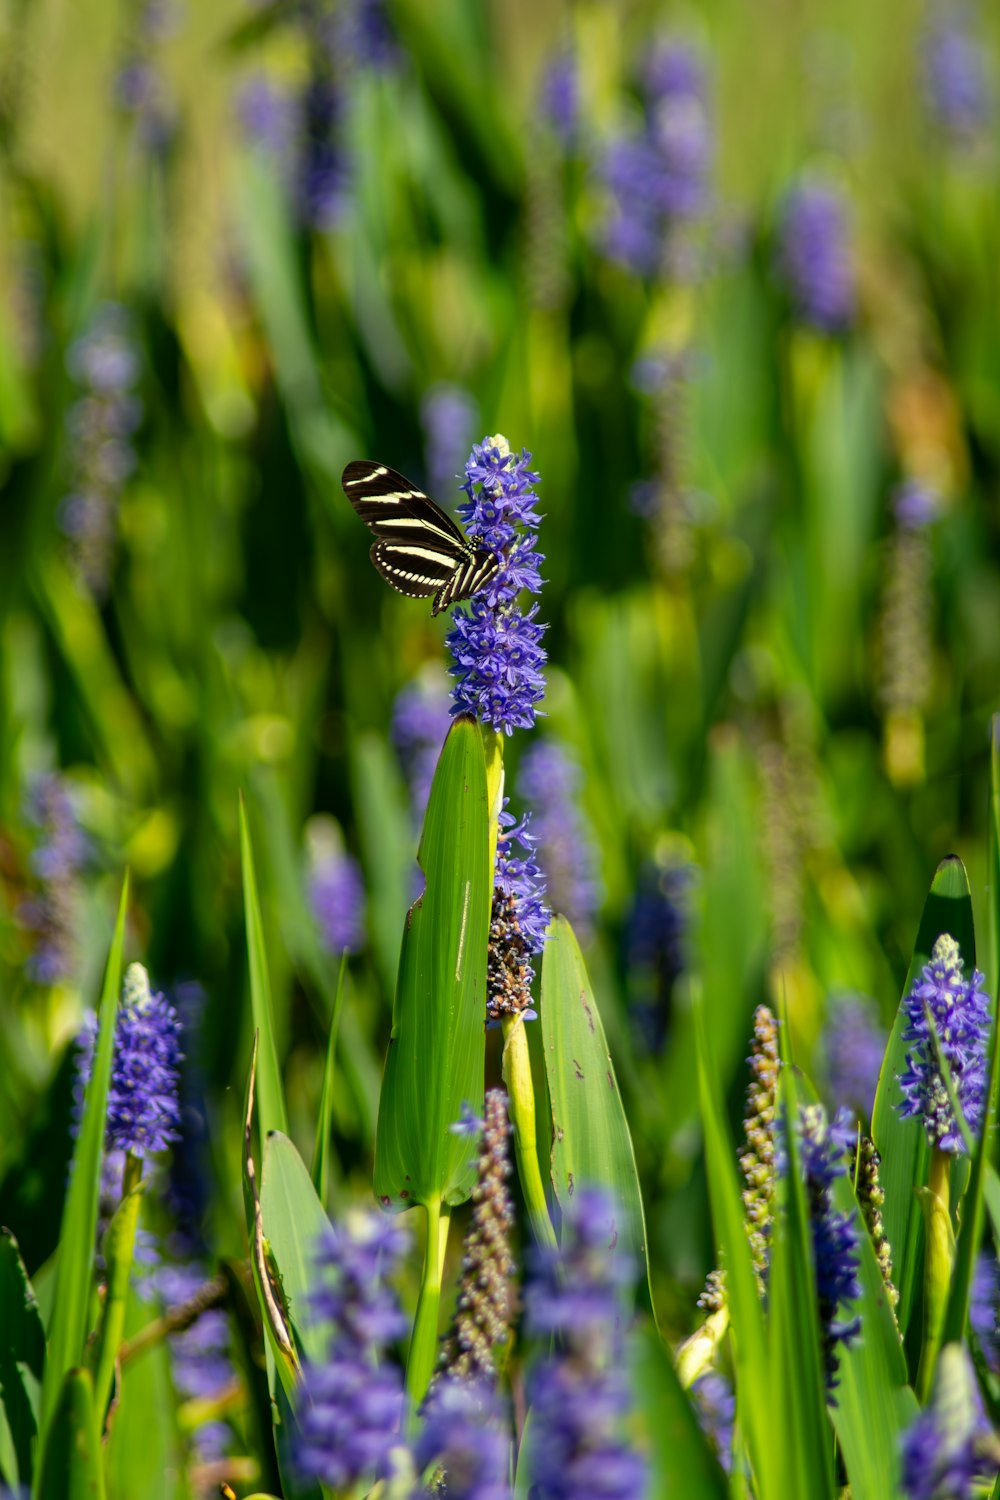 a butterfly sitting on a purple flower in a field